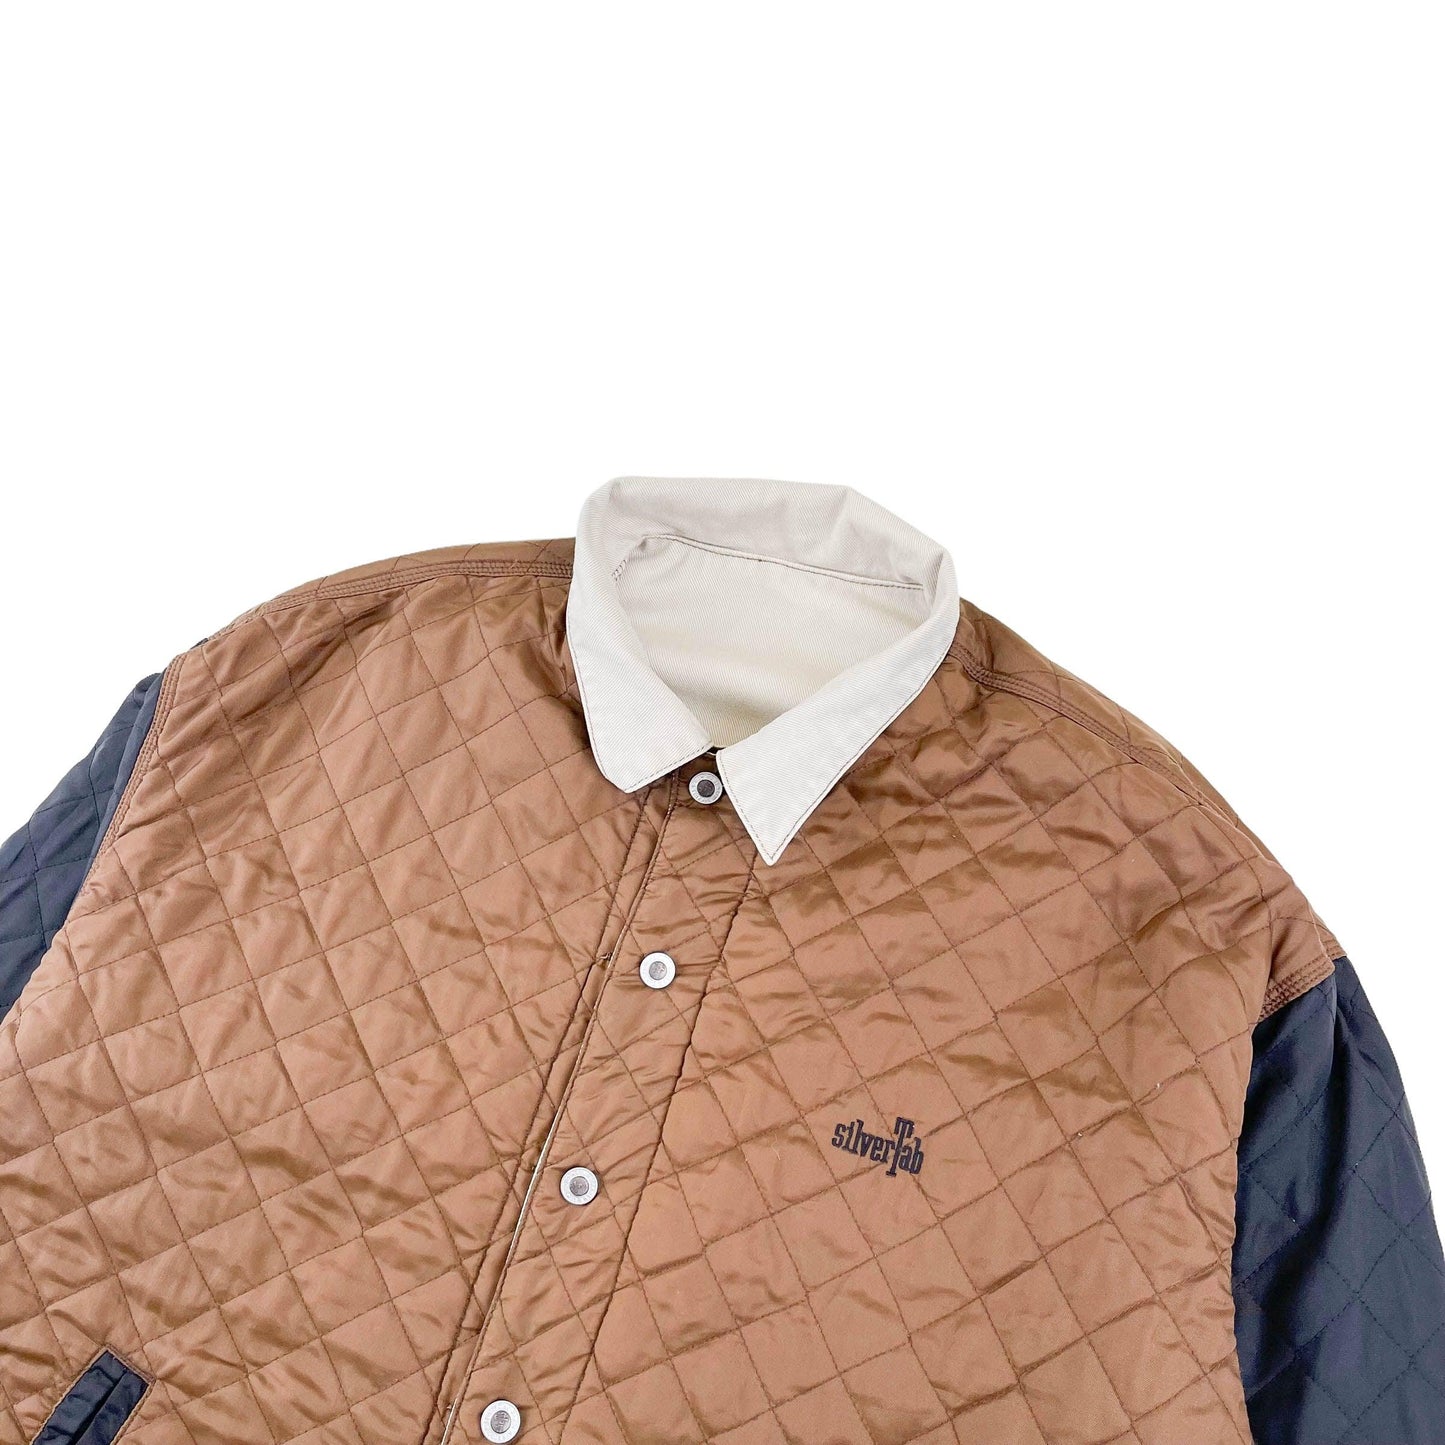 Vintage Levis Denim Jacket (L) - Known Source